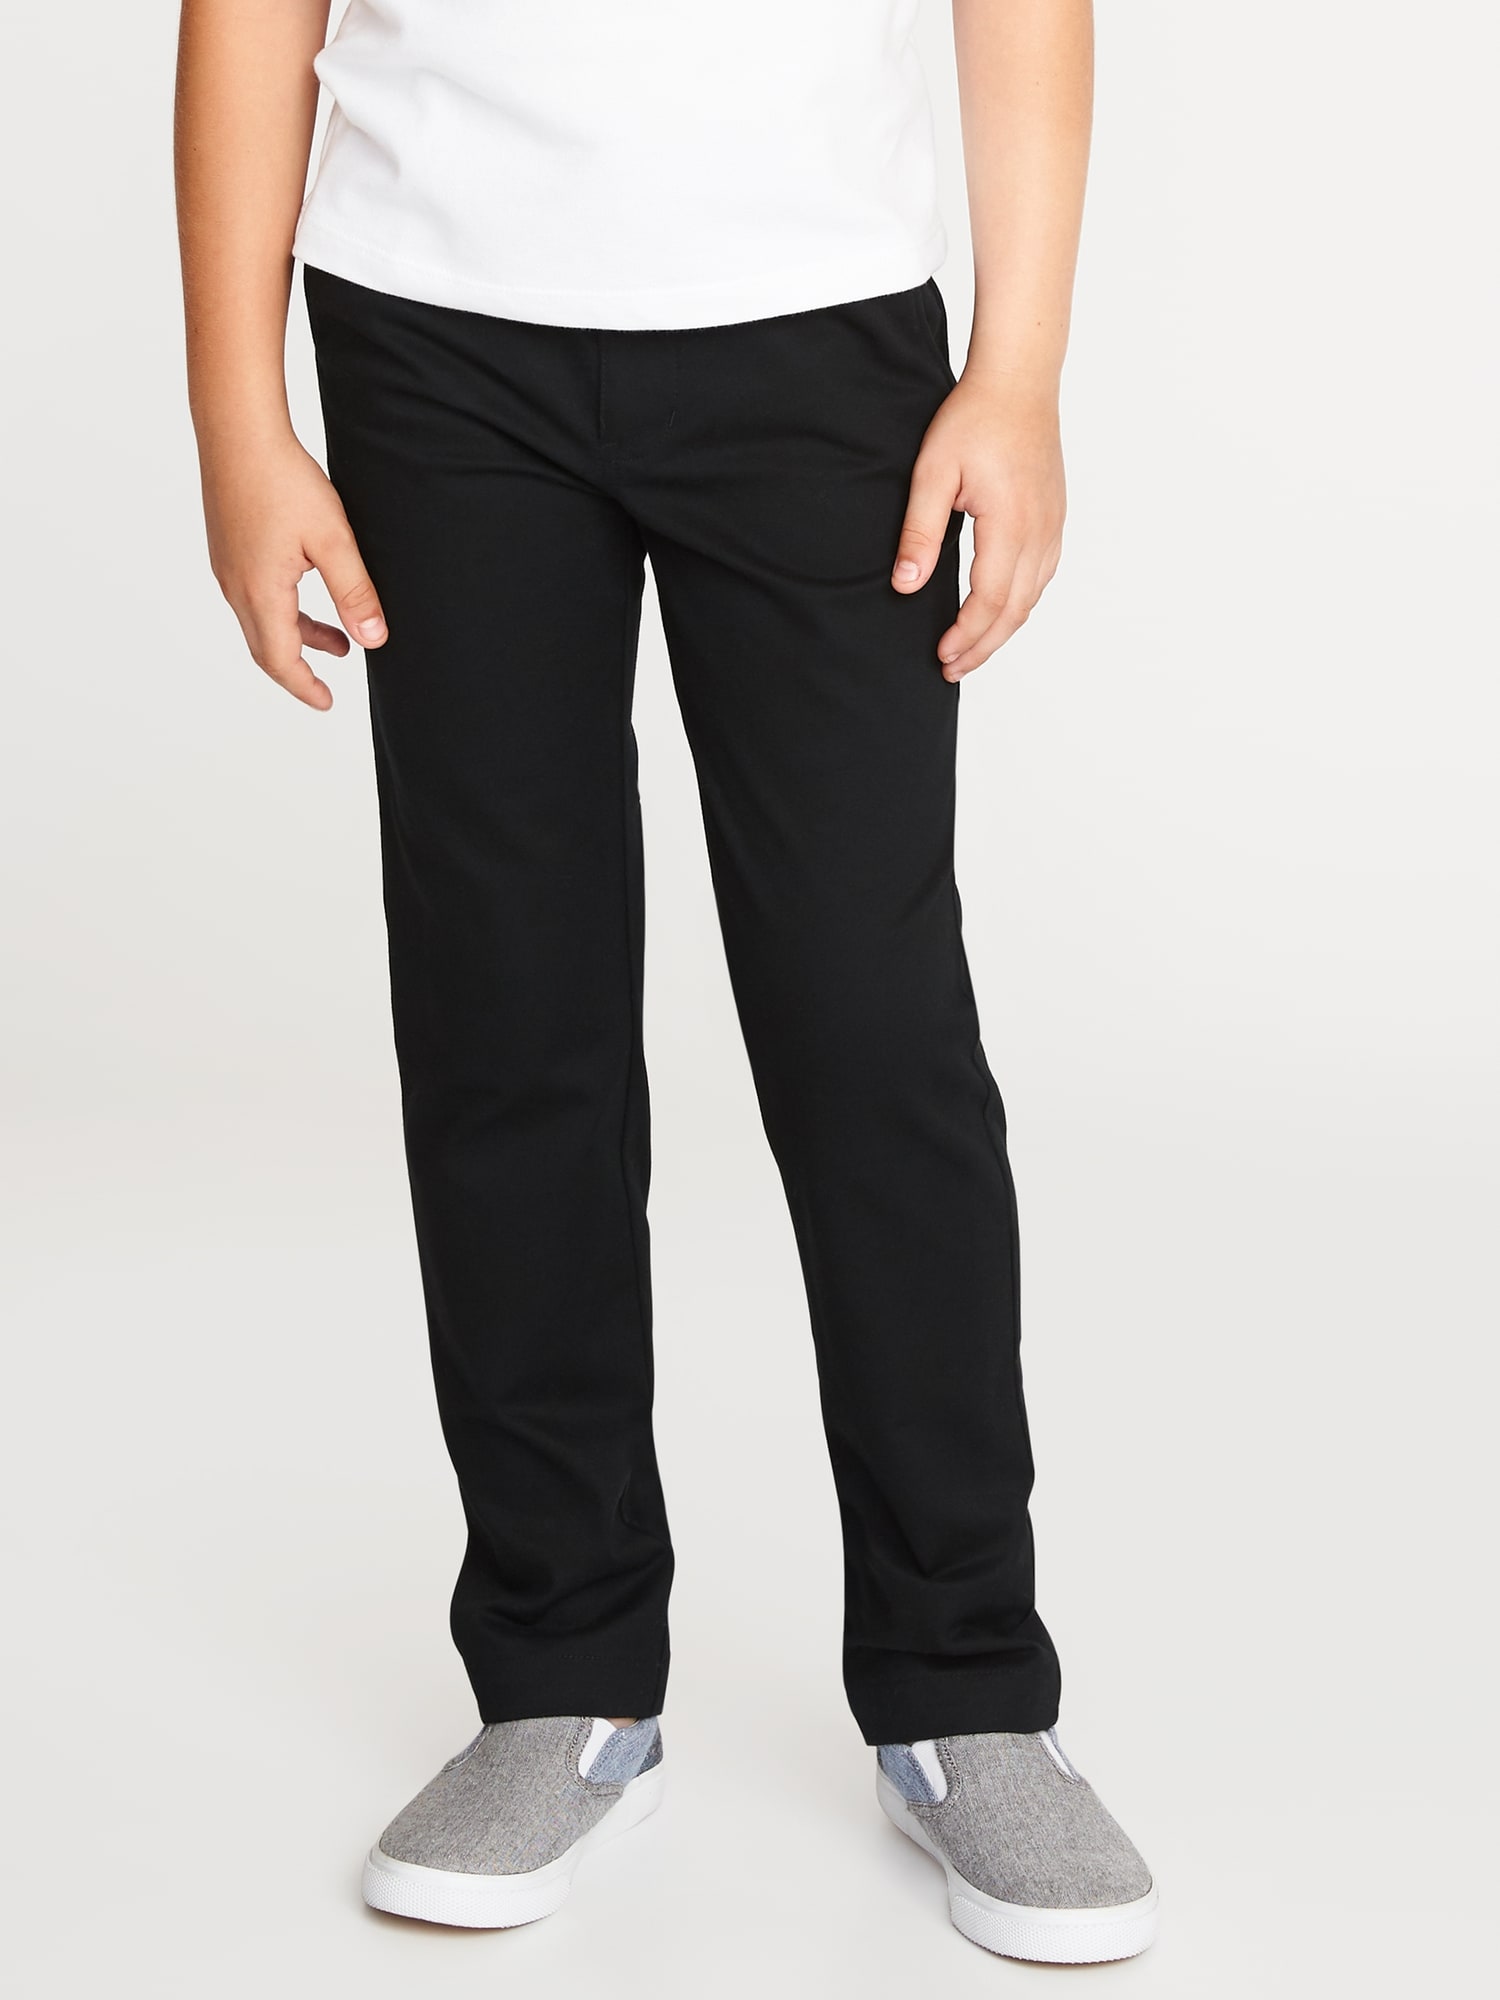 Boy's Old Navy Flat Front Uniform Pants Khakis BLACK Size 10  ~ NEW NWT 